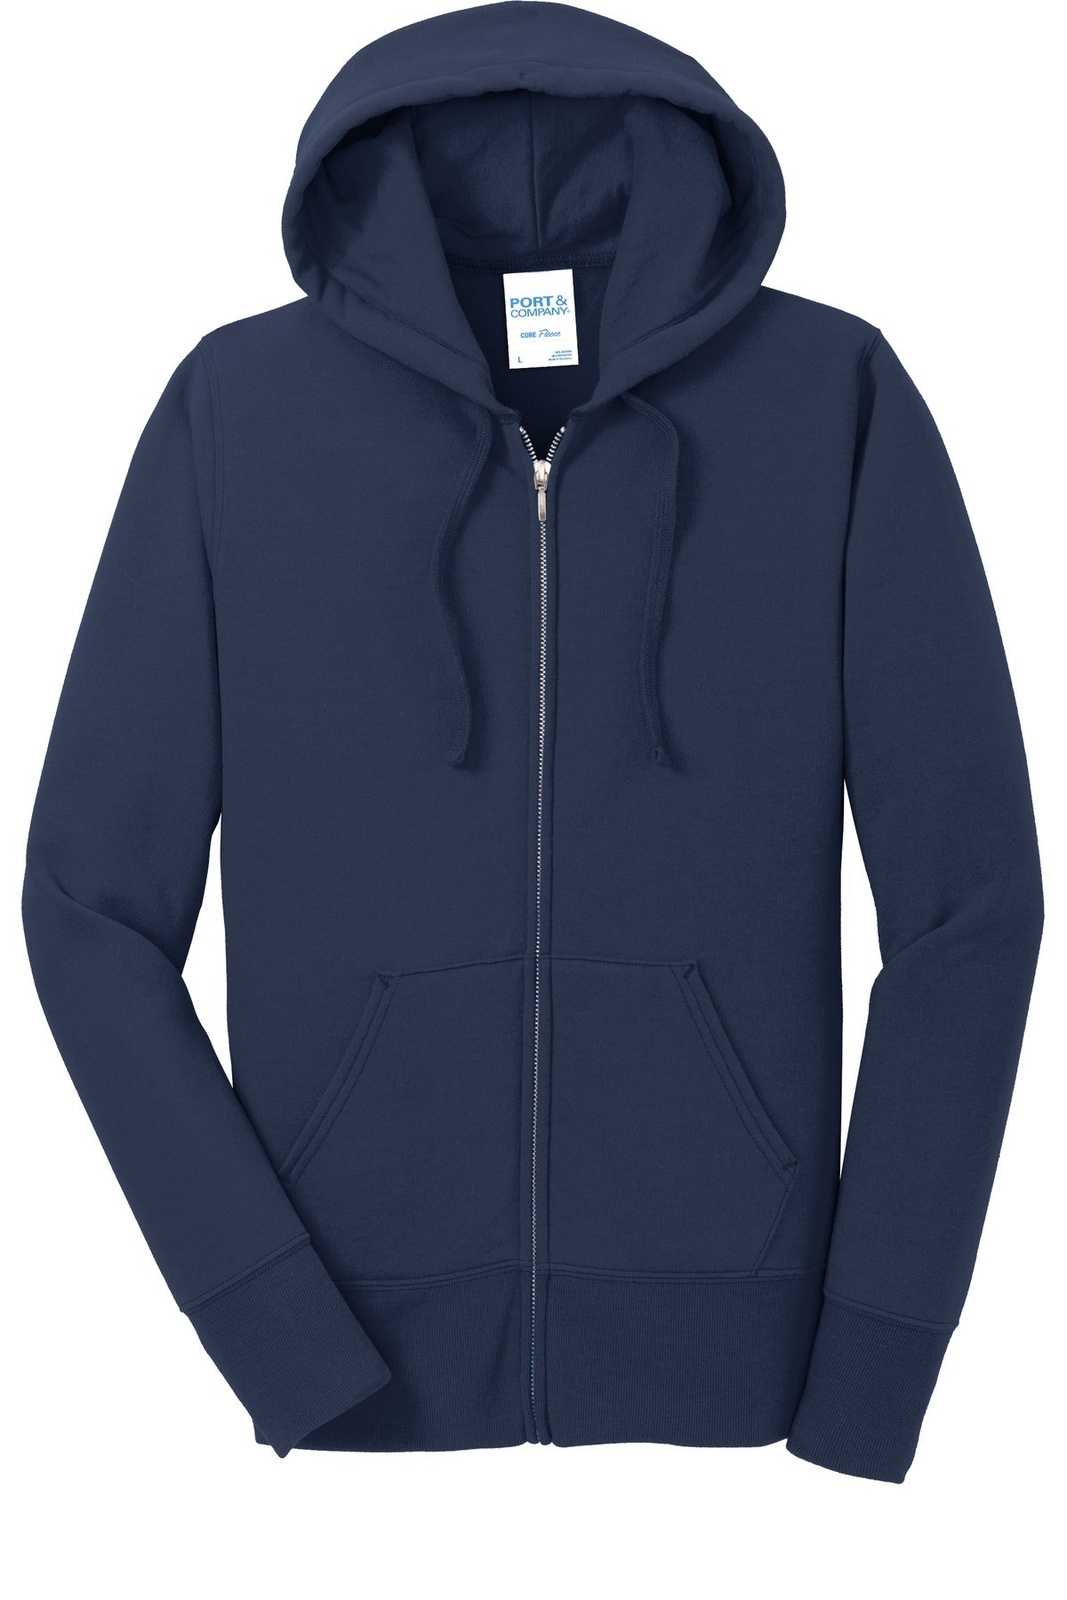 Port &amp; Company LPC78ZH Ladies Core Fleece Full-Zip Hooded Sweatshirt - Navy - HIT a Double - 5